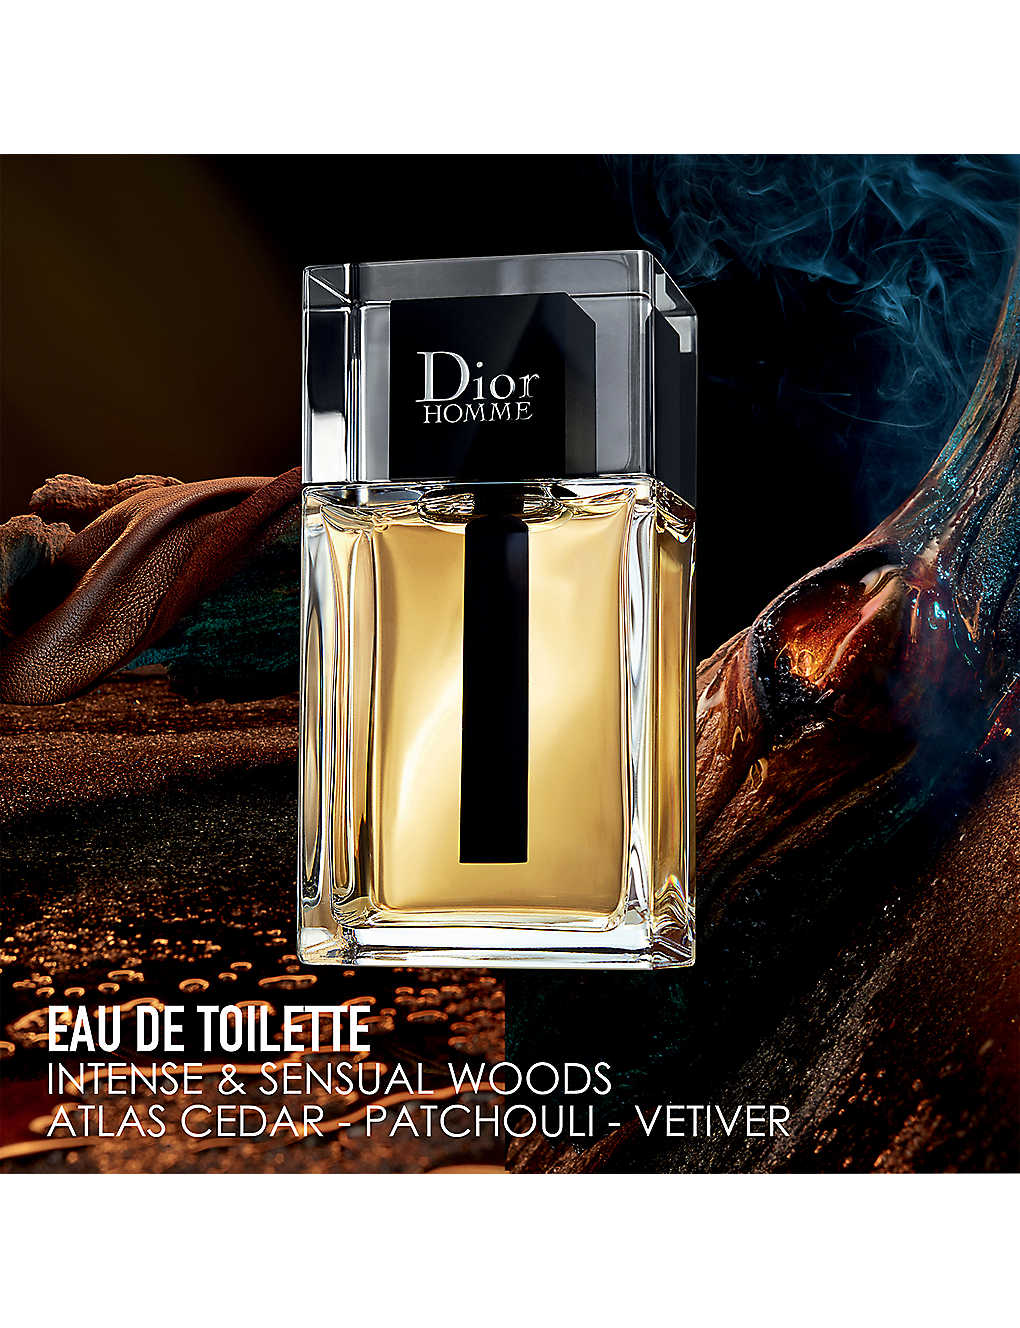 Dior Homme Limited Edition Eau de Toilette